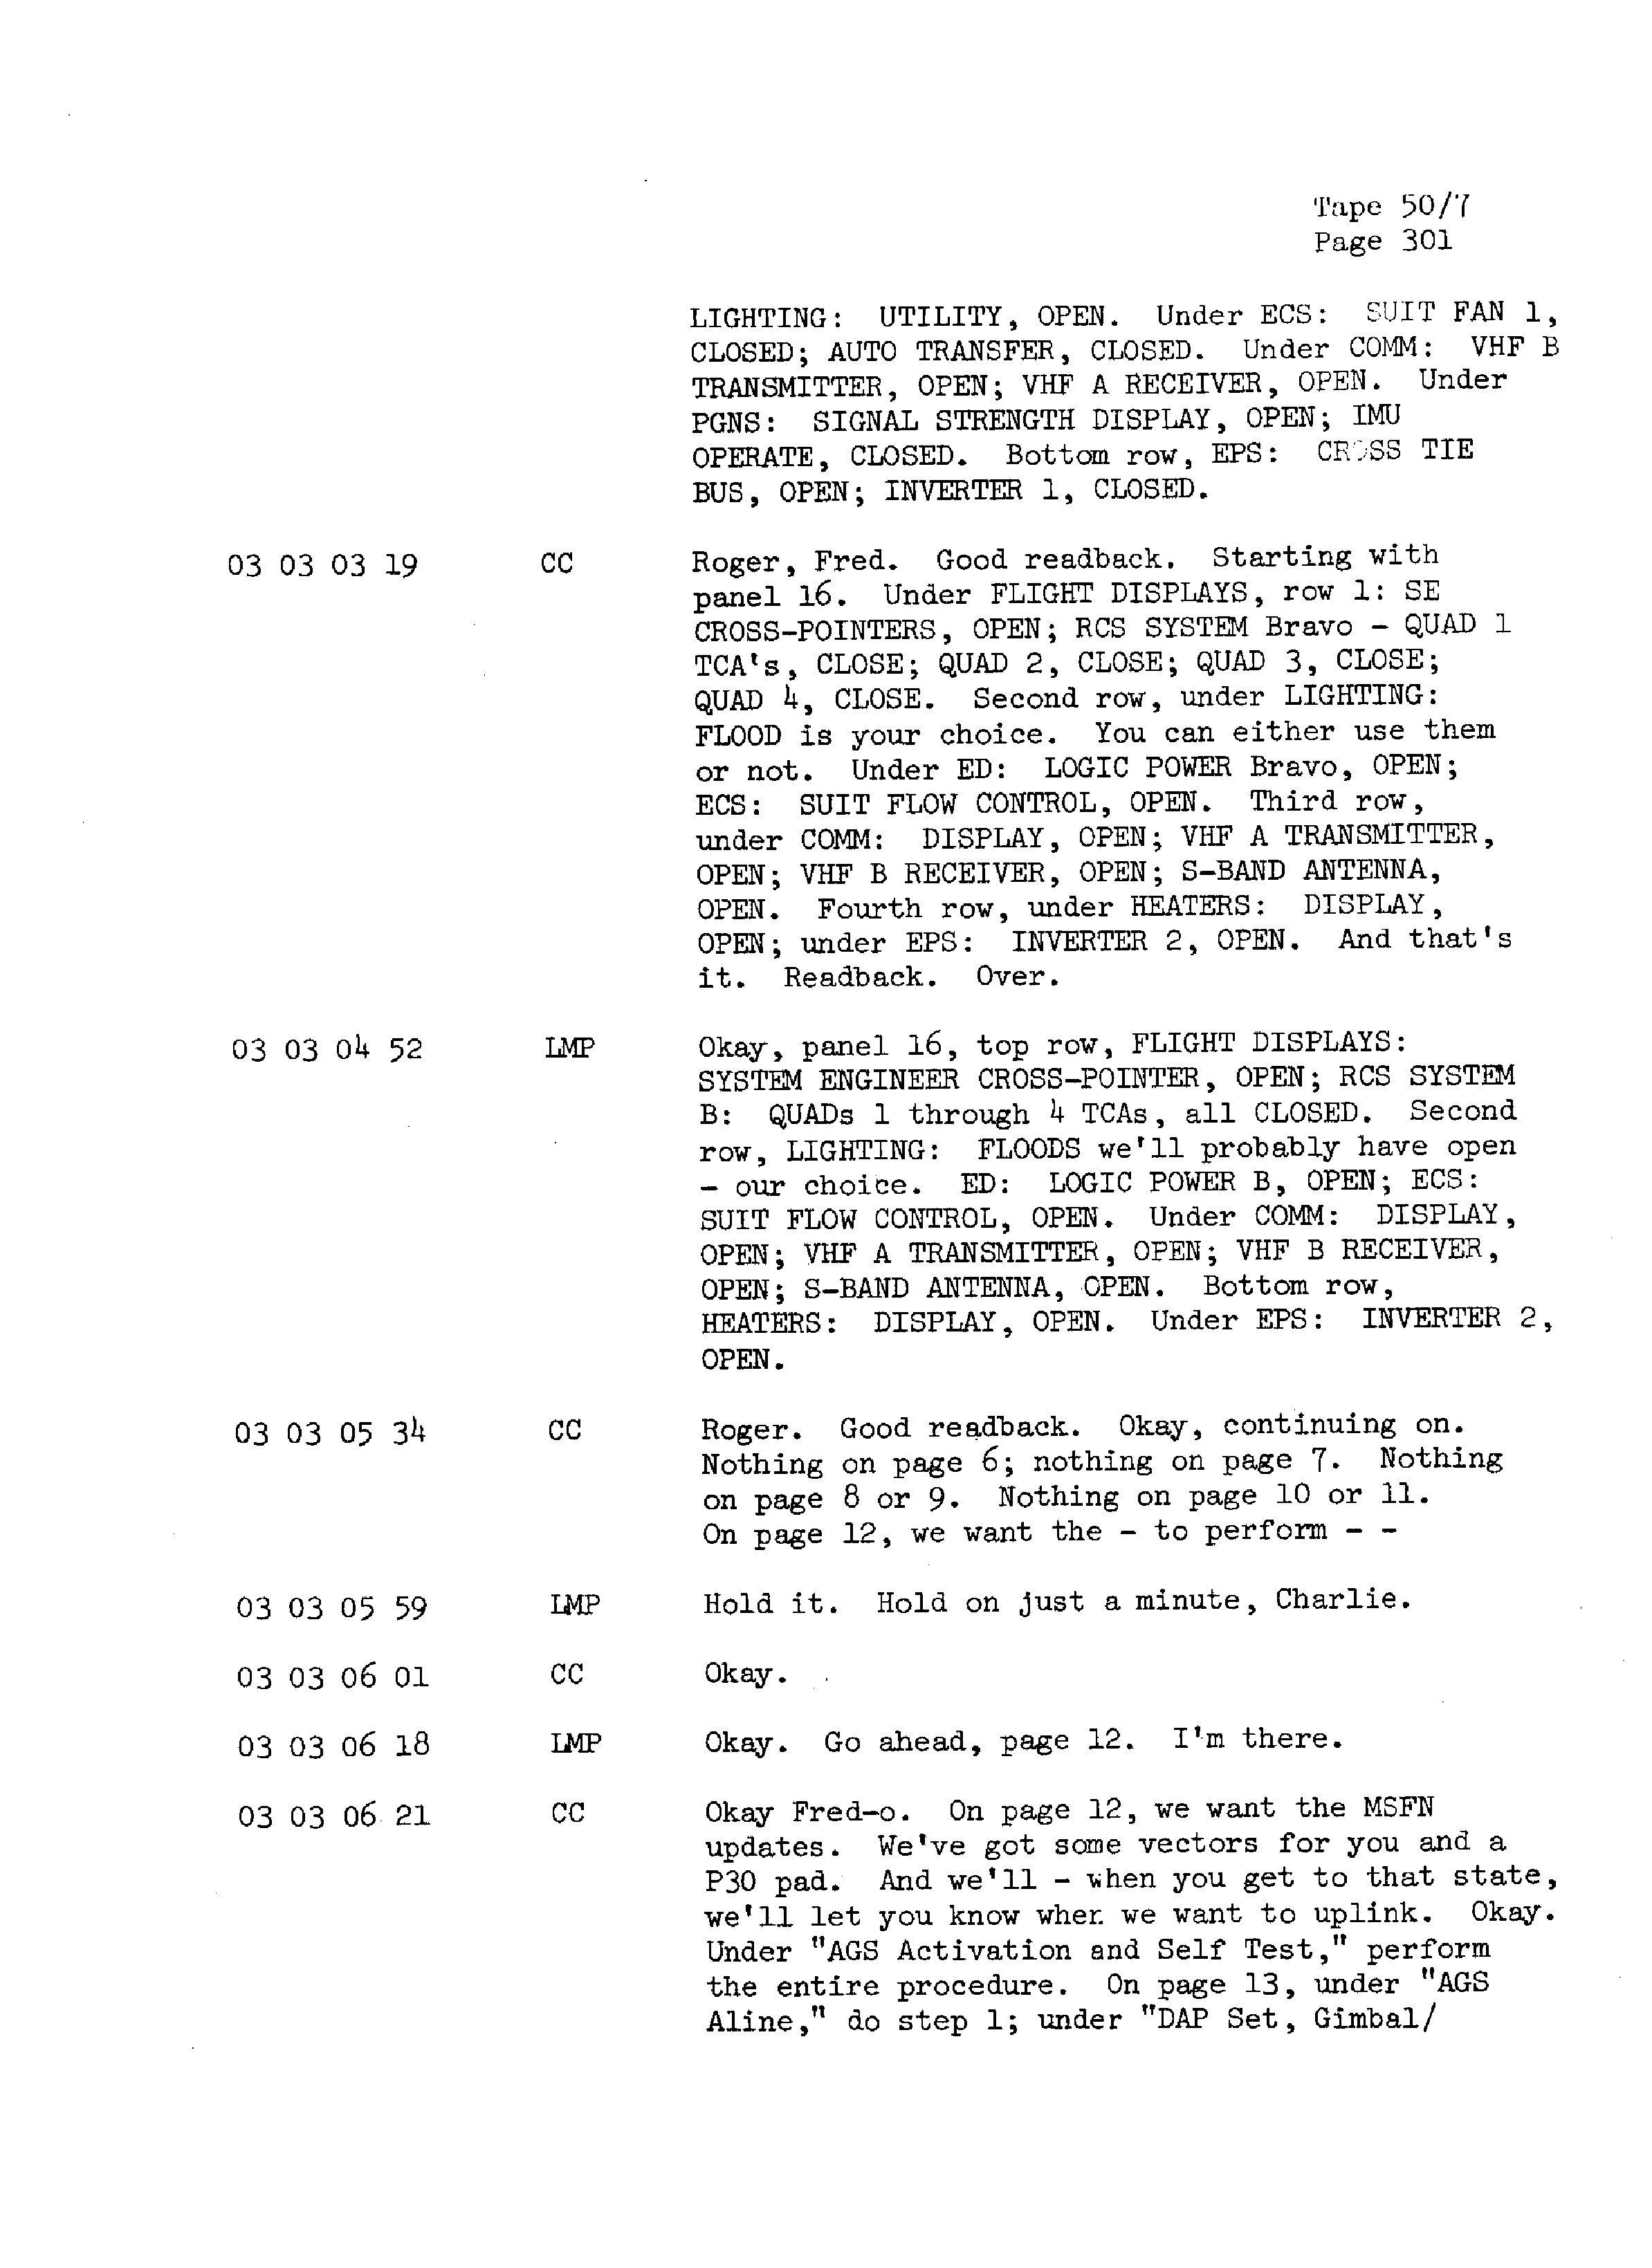 Page 308 of Apollo 13’s original transcript